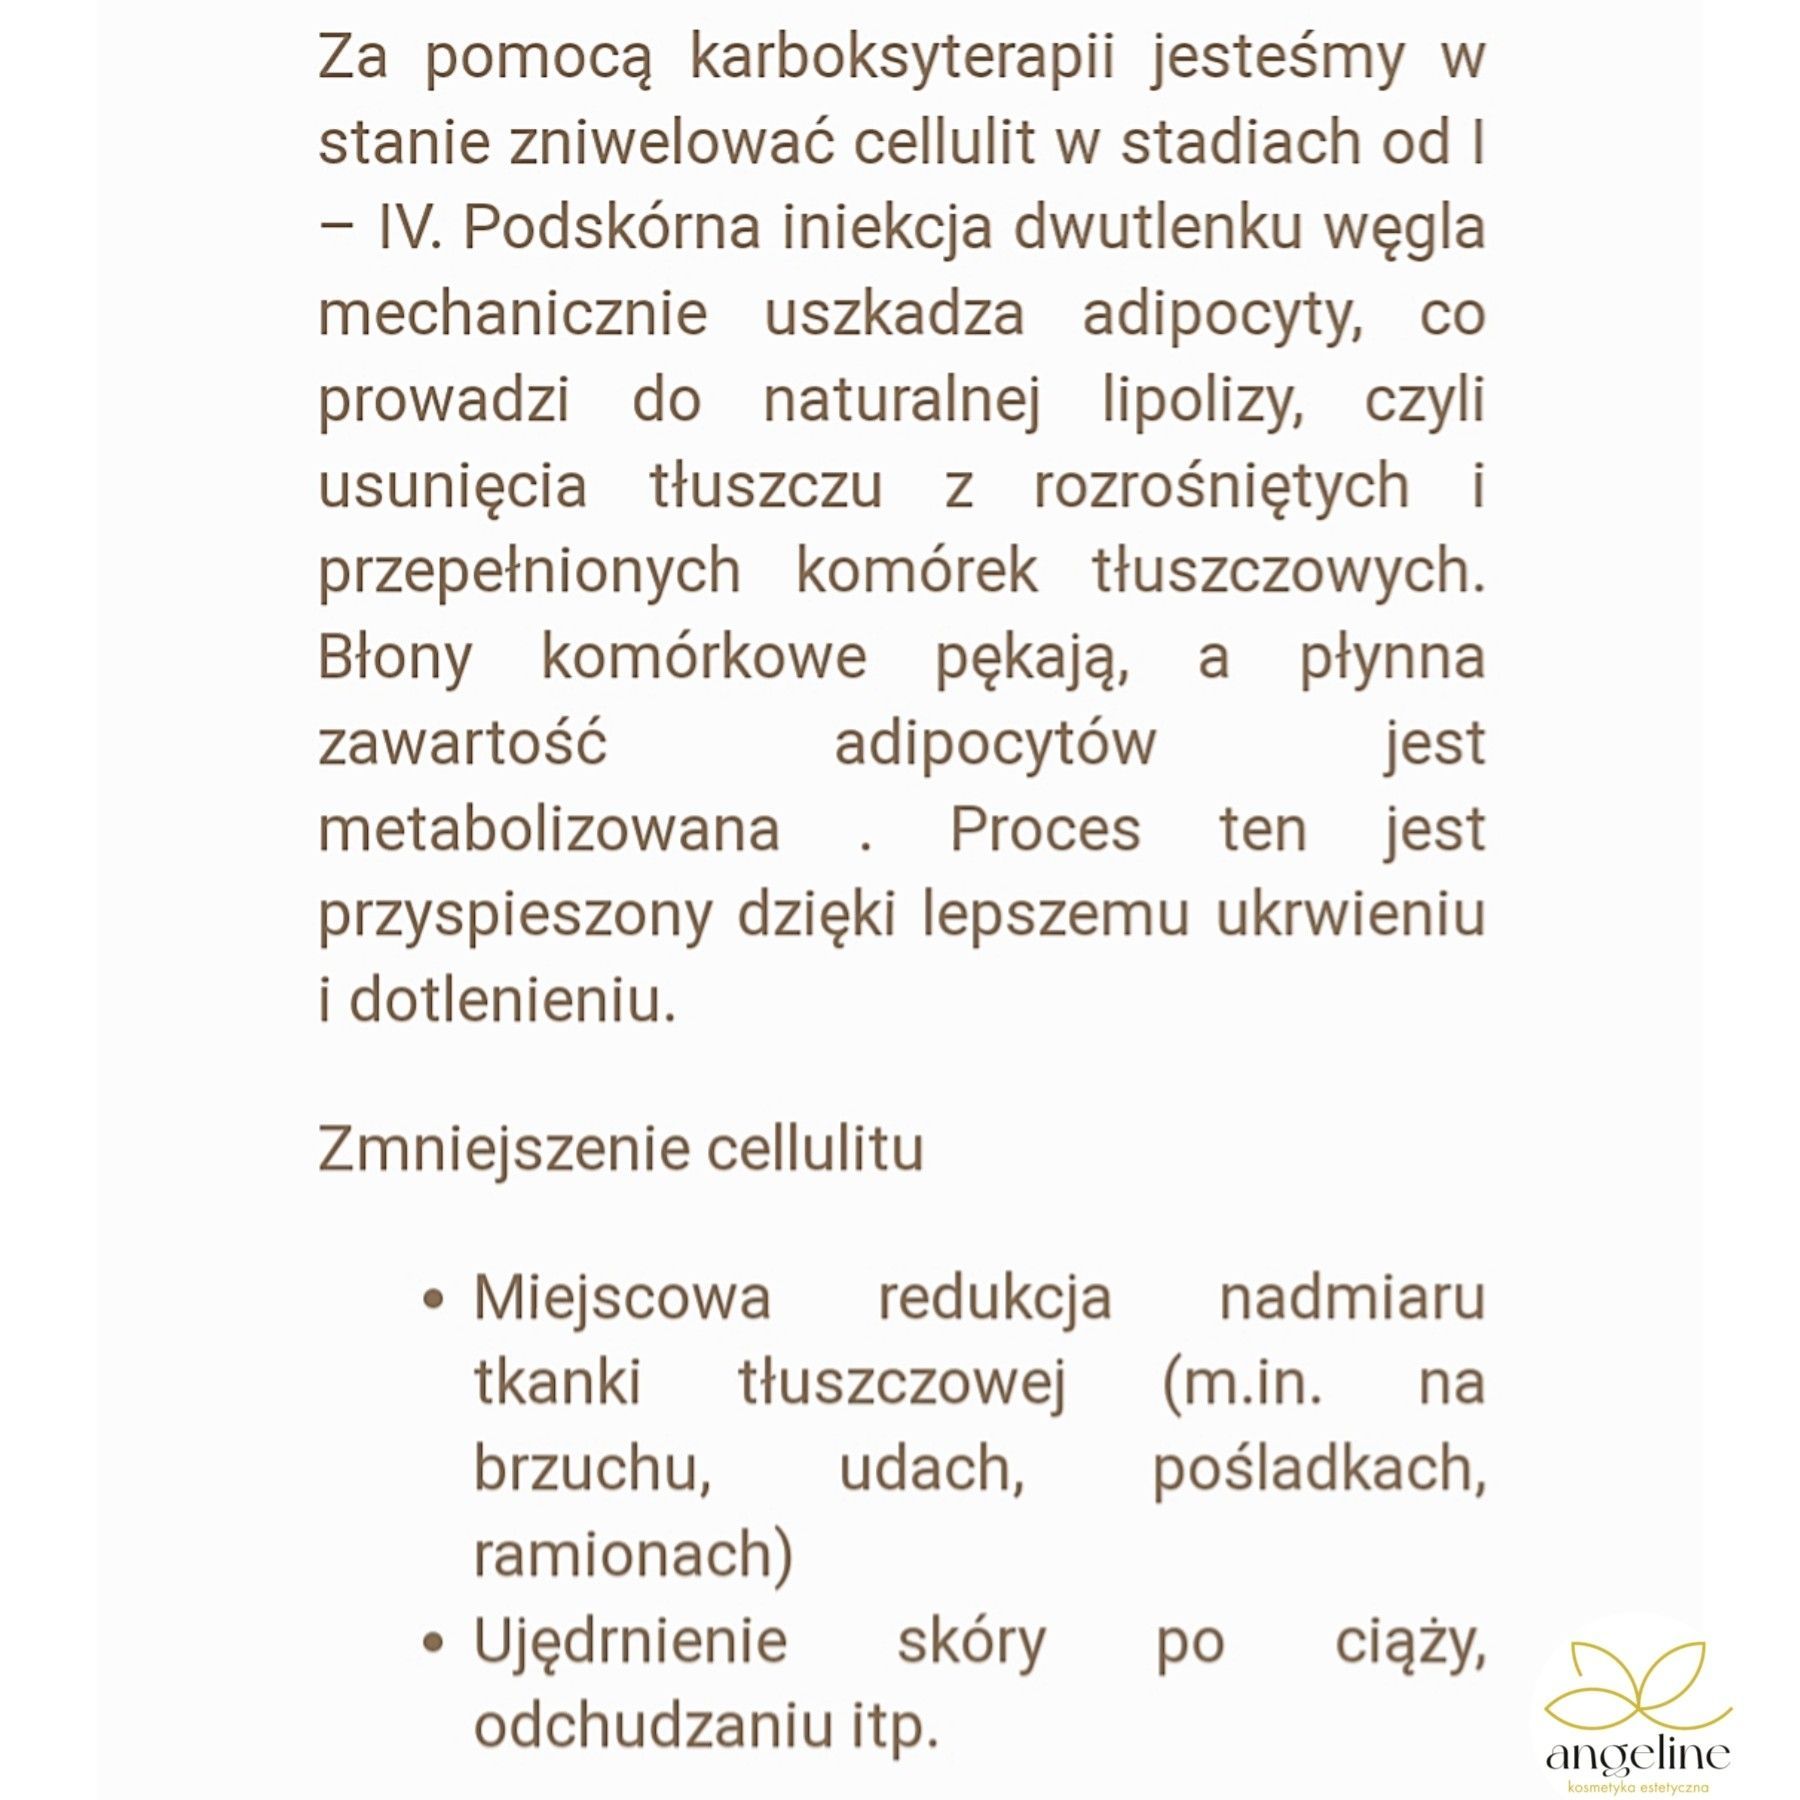 Portfolio usługi Uda - cellulit, tk. tłuszczowa